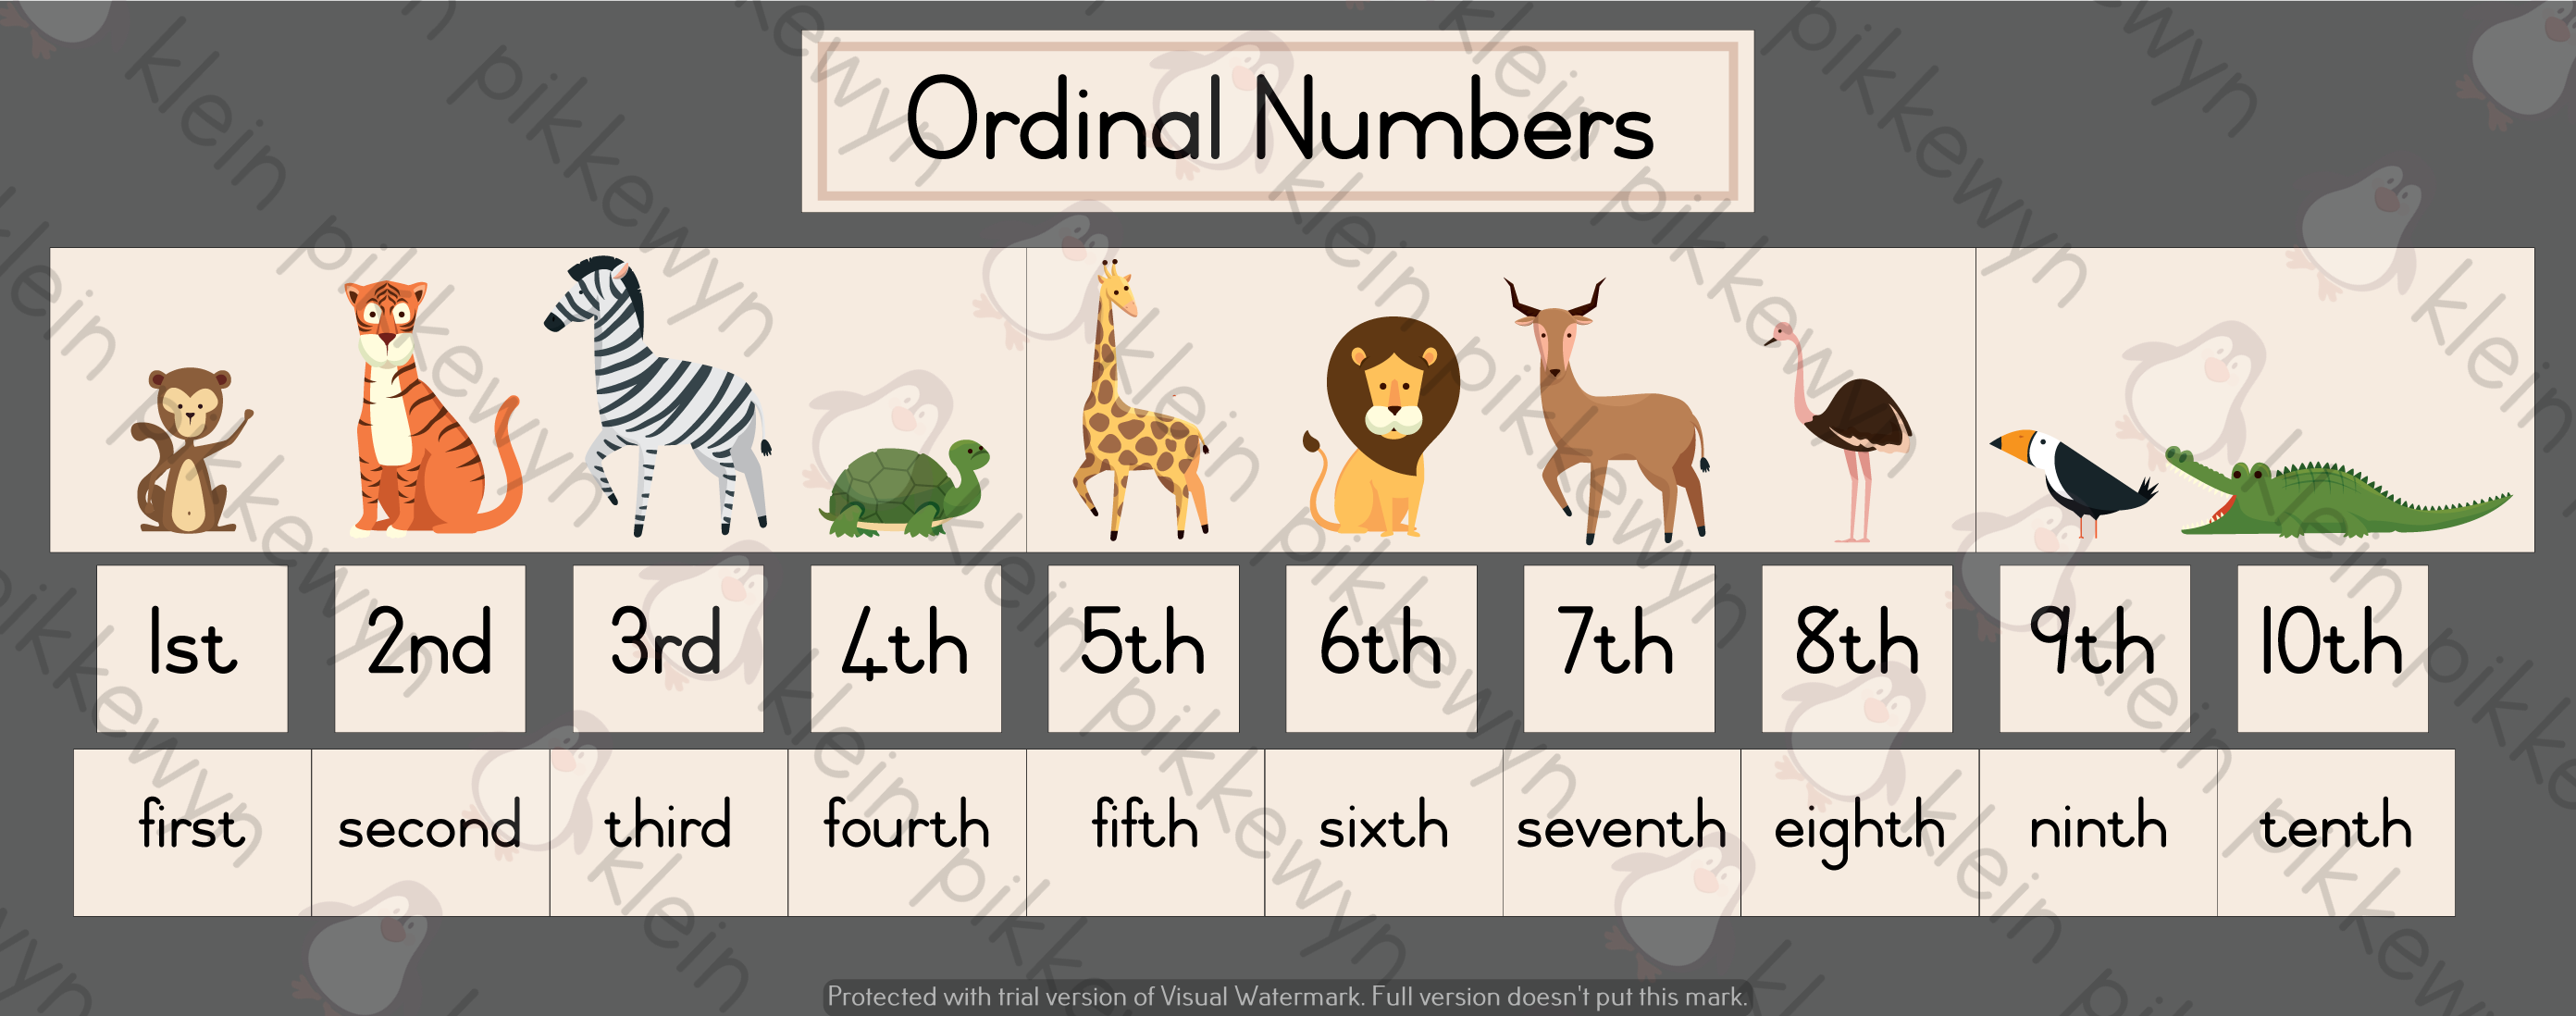 ordinal-numbers-worksheet-1-to-10-ordinal-numbers-numbers-free-printable-english-ordinal